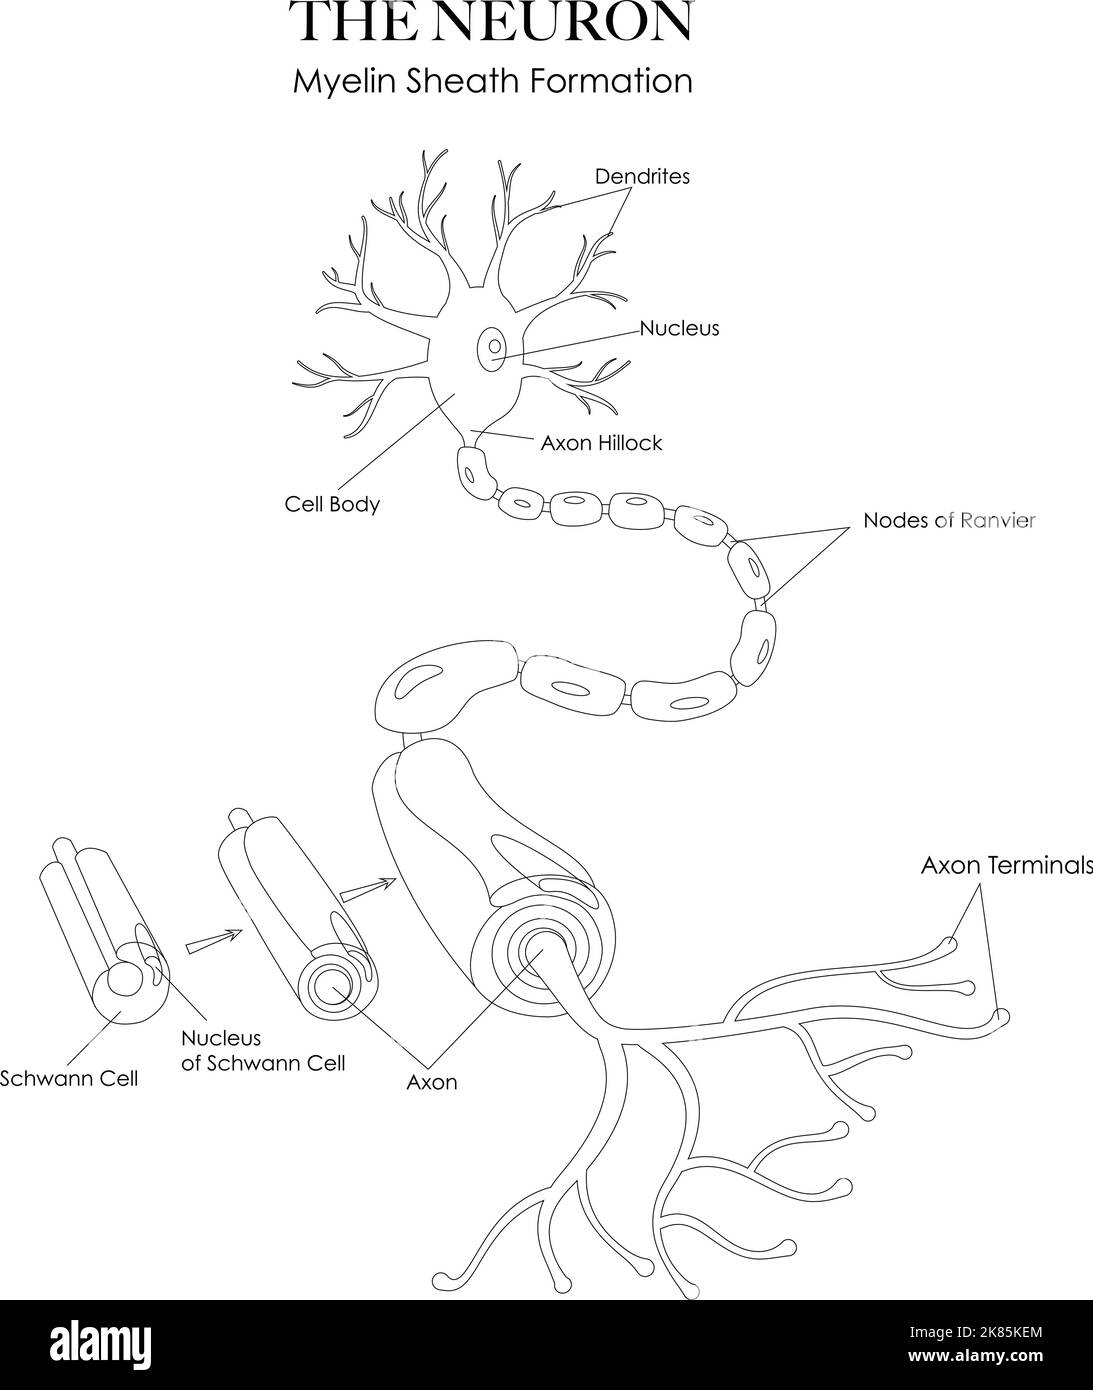 Illustration de l'anatomie des neurones et de la formation de la gaine de myéline en noir et blanc. Peut être utilisé comme une feuille de travail pour colorer et apprendre la structure de neurone Illustration de Vecteur